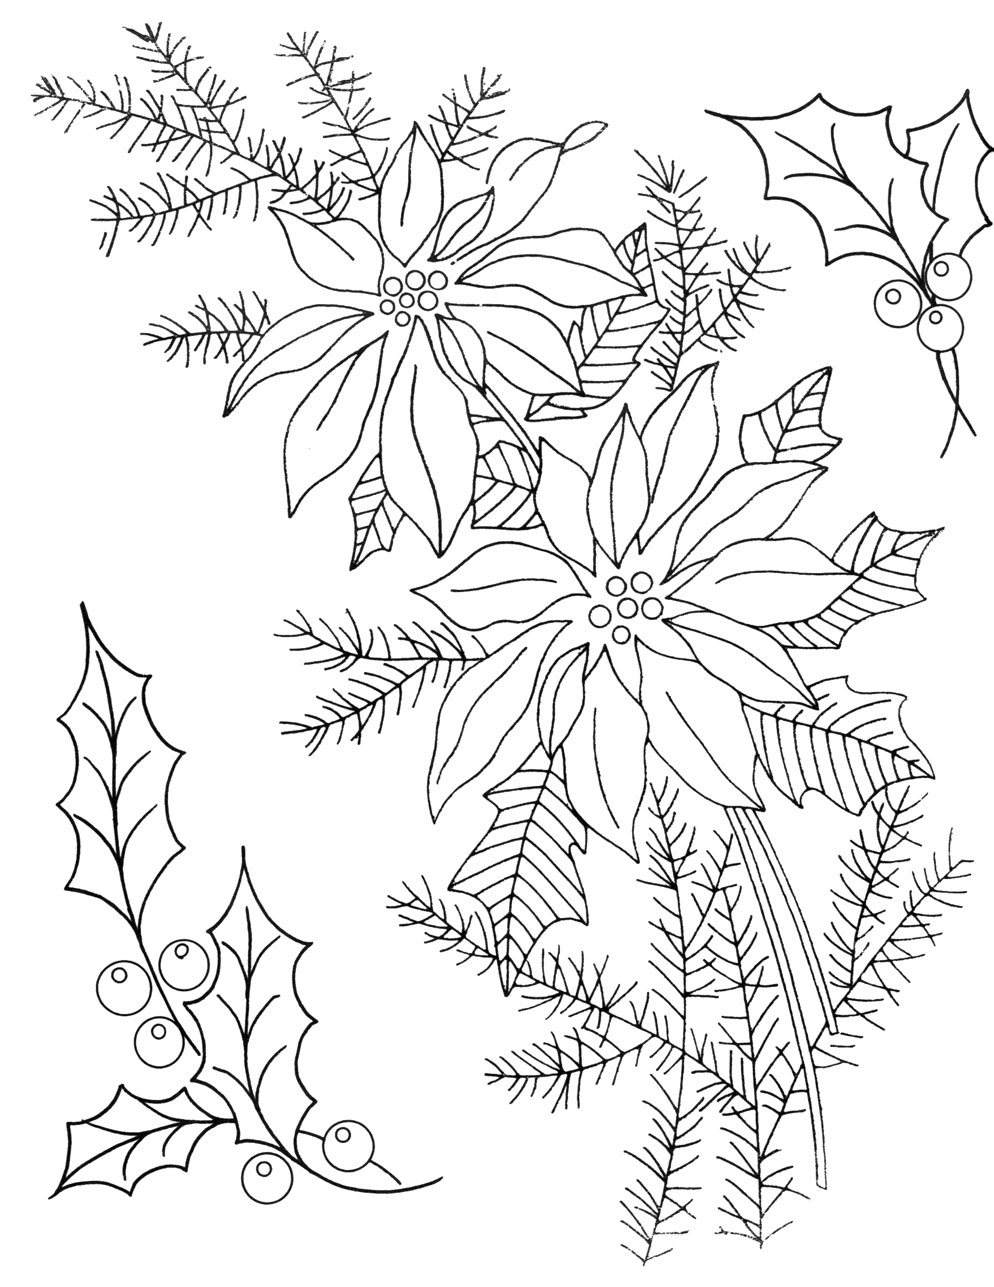 Printable Poinsettia Patterns